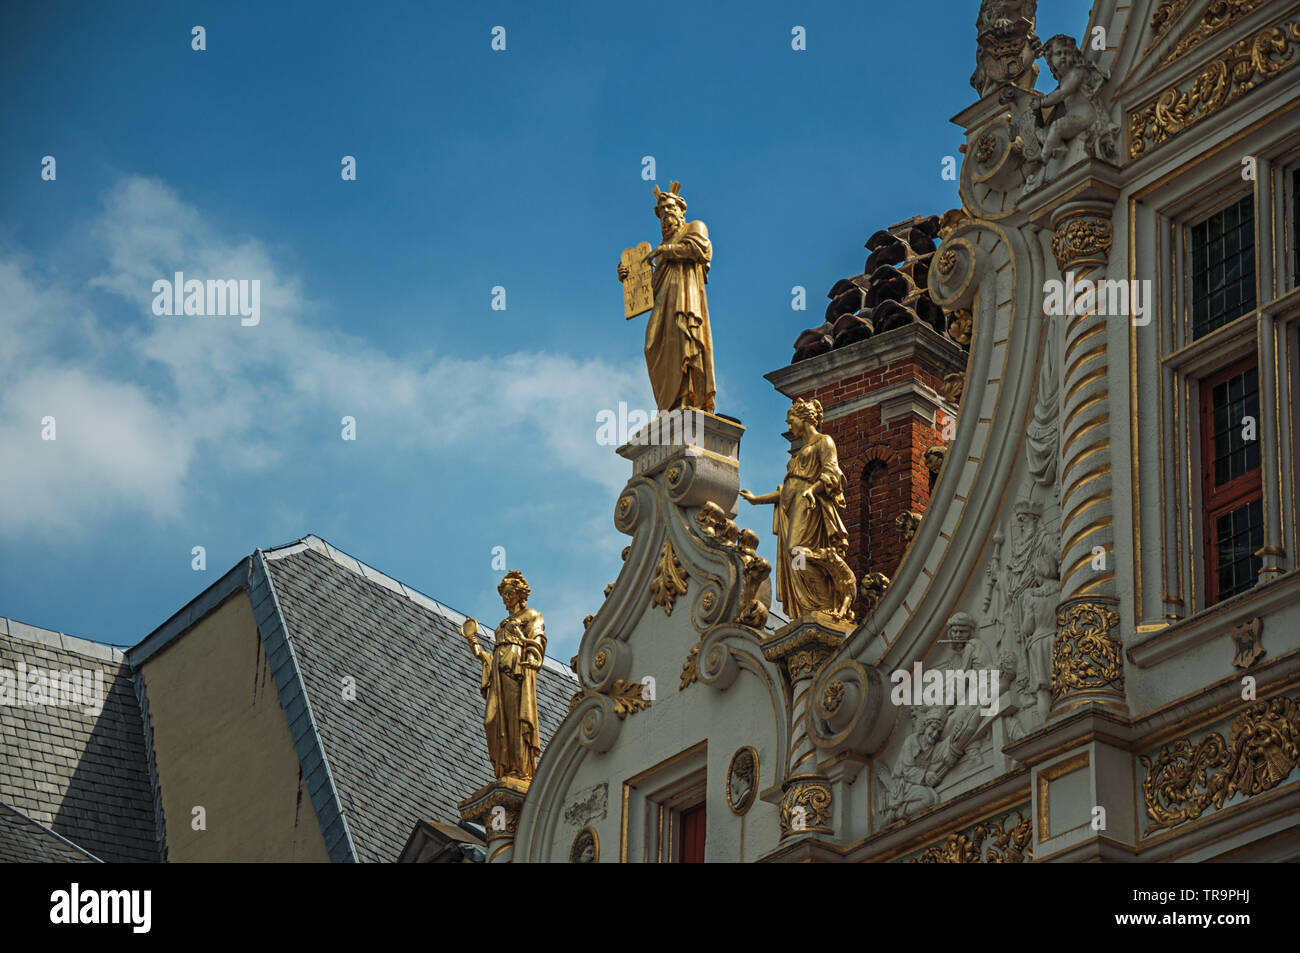 La décoration riche et élégant dans un immeuble historique au centre-ville de Bruges. Charmante ville avec des canaux et de vieux bâtiments en Belgique. Banque D'Images